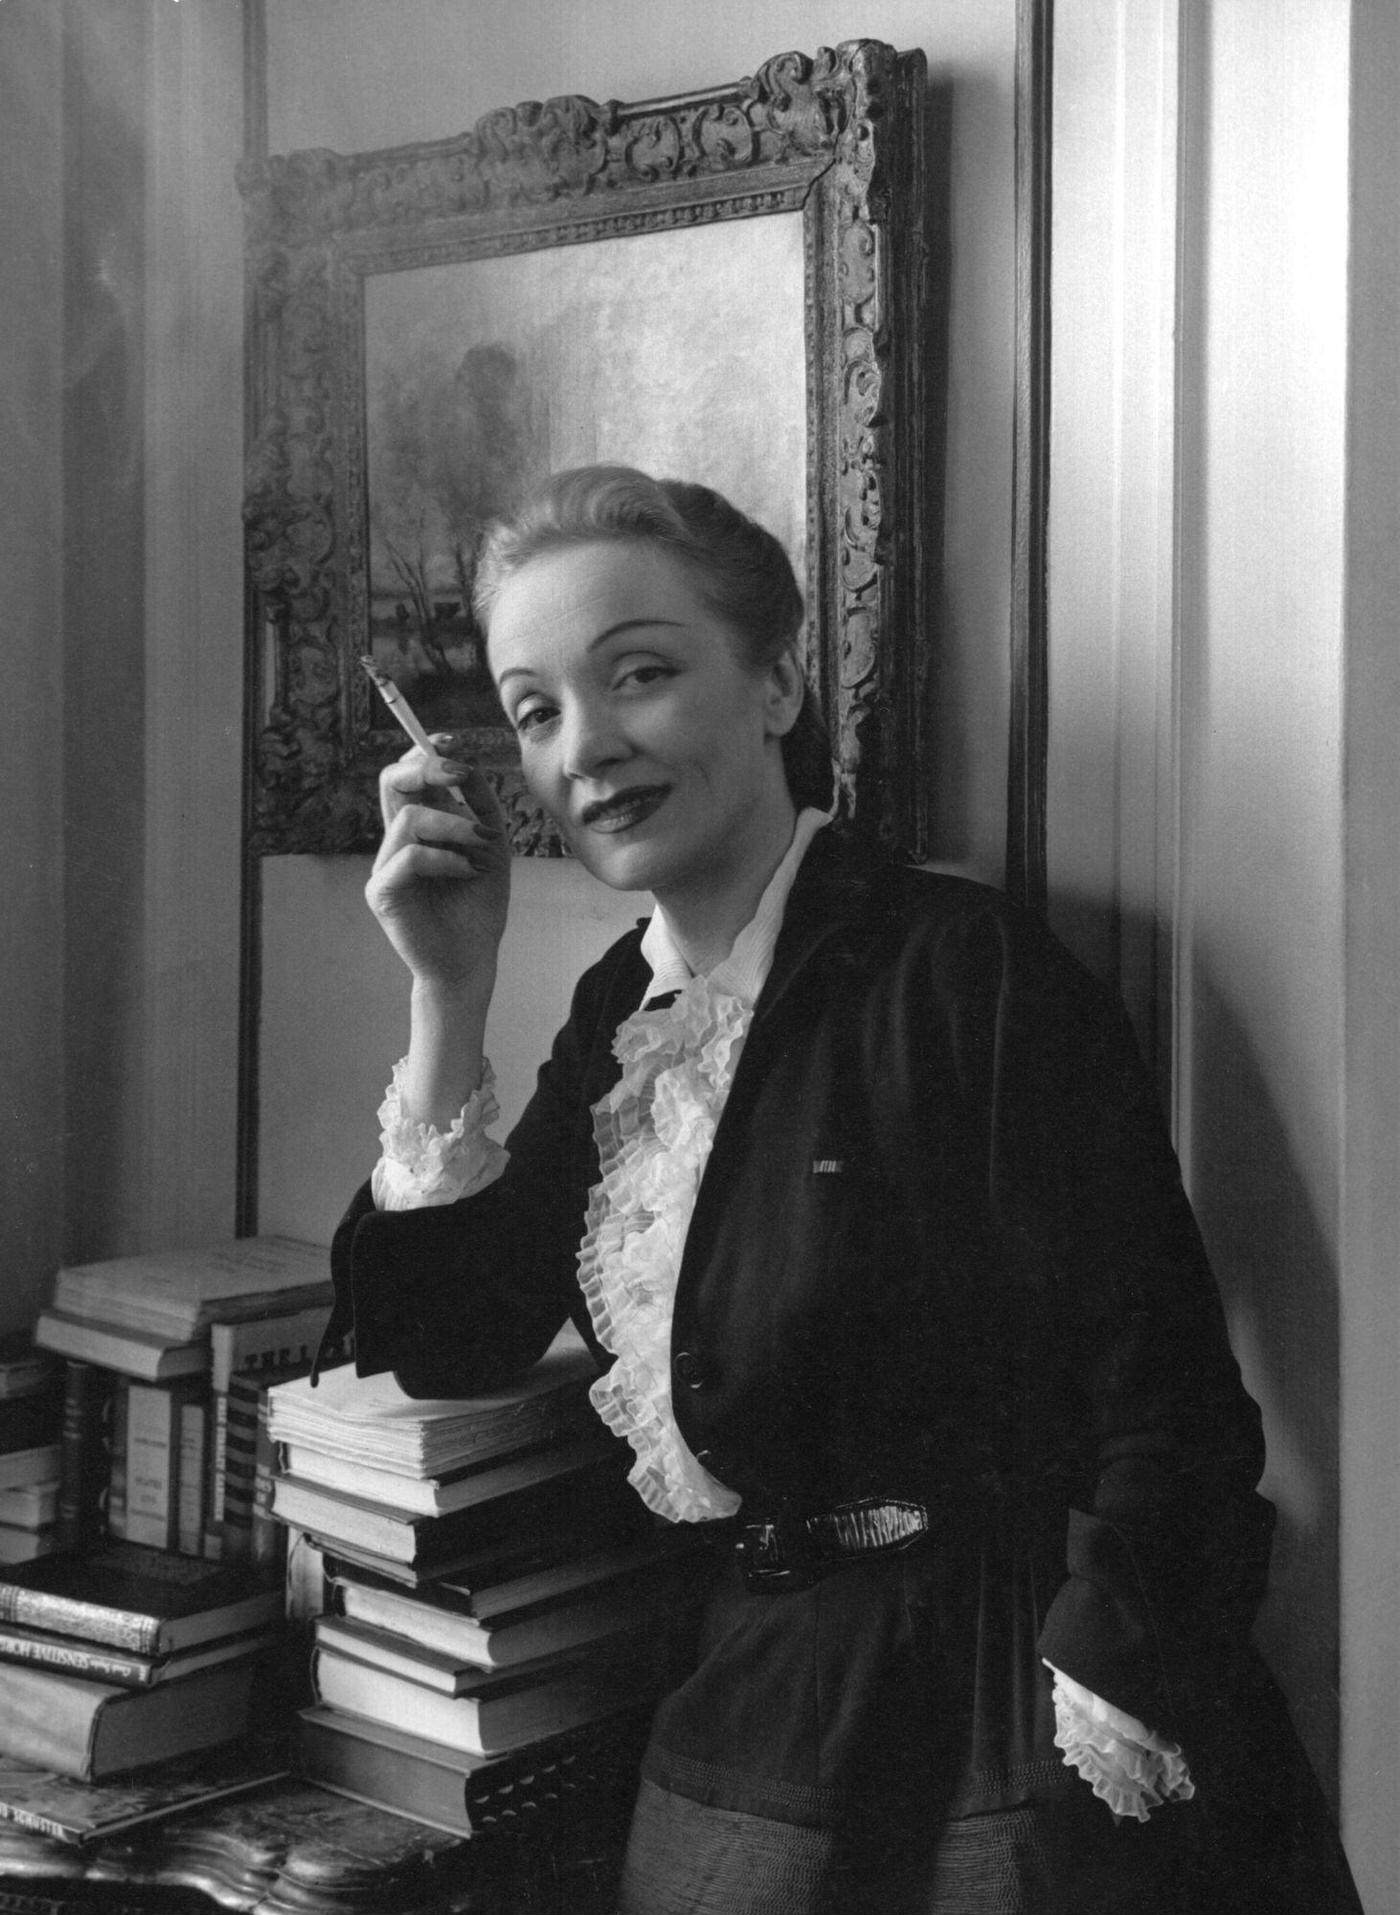 A portrait of Marlene Dietrich taken in NYC in 1948.